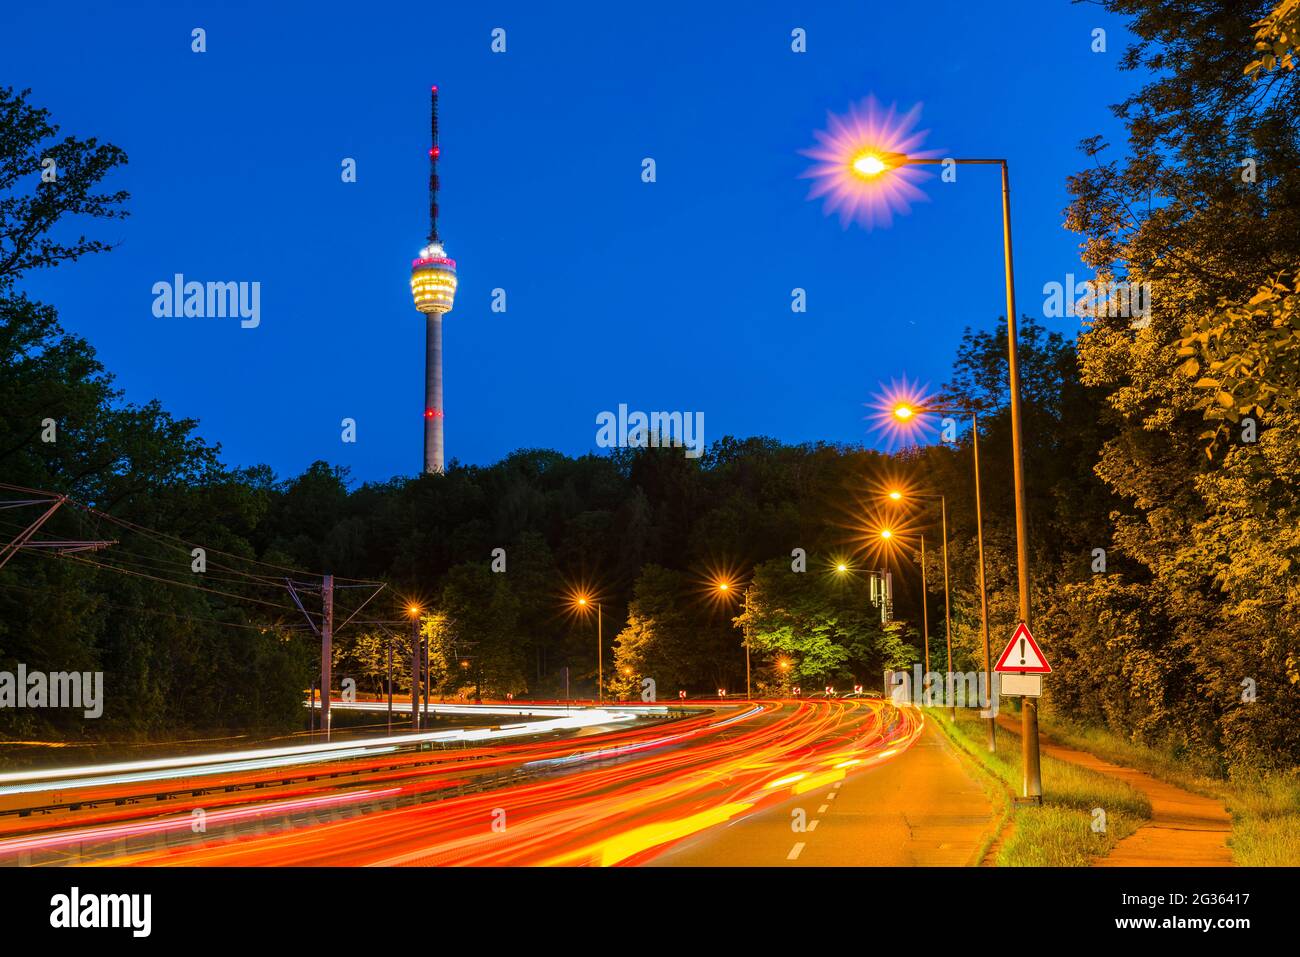 Alemania, el horizonte urbano de Stuttgart y la autopista con tráfico de coches por la noche iluminando la calle que conduce a la torre de televisión llamada fernsehturm Foto de stock